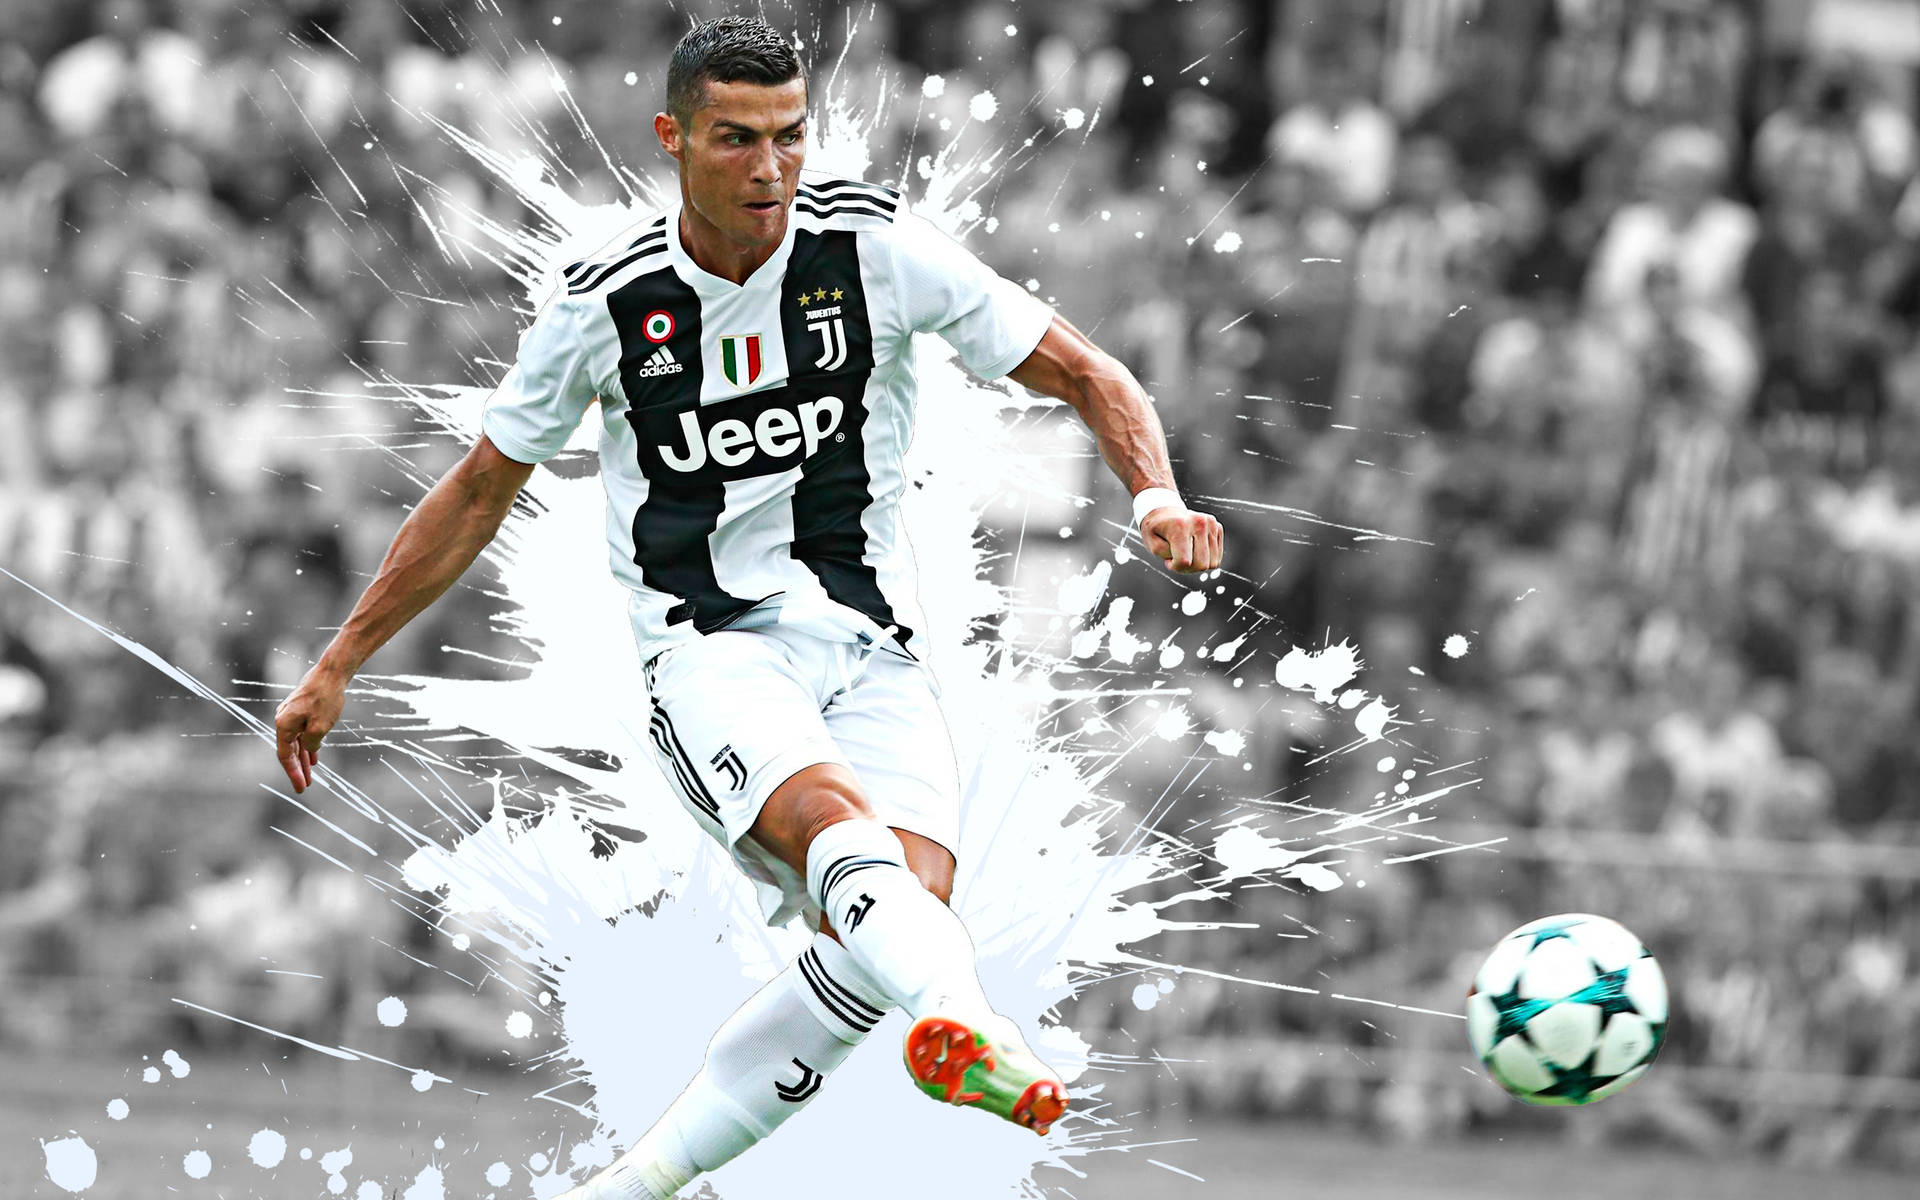 Cristiano Ronaldo Poster  Cristiano ronaldo hd wallpapers